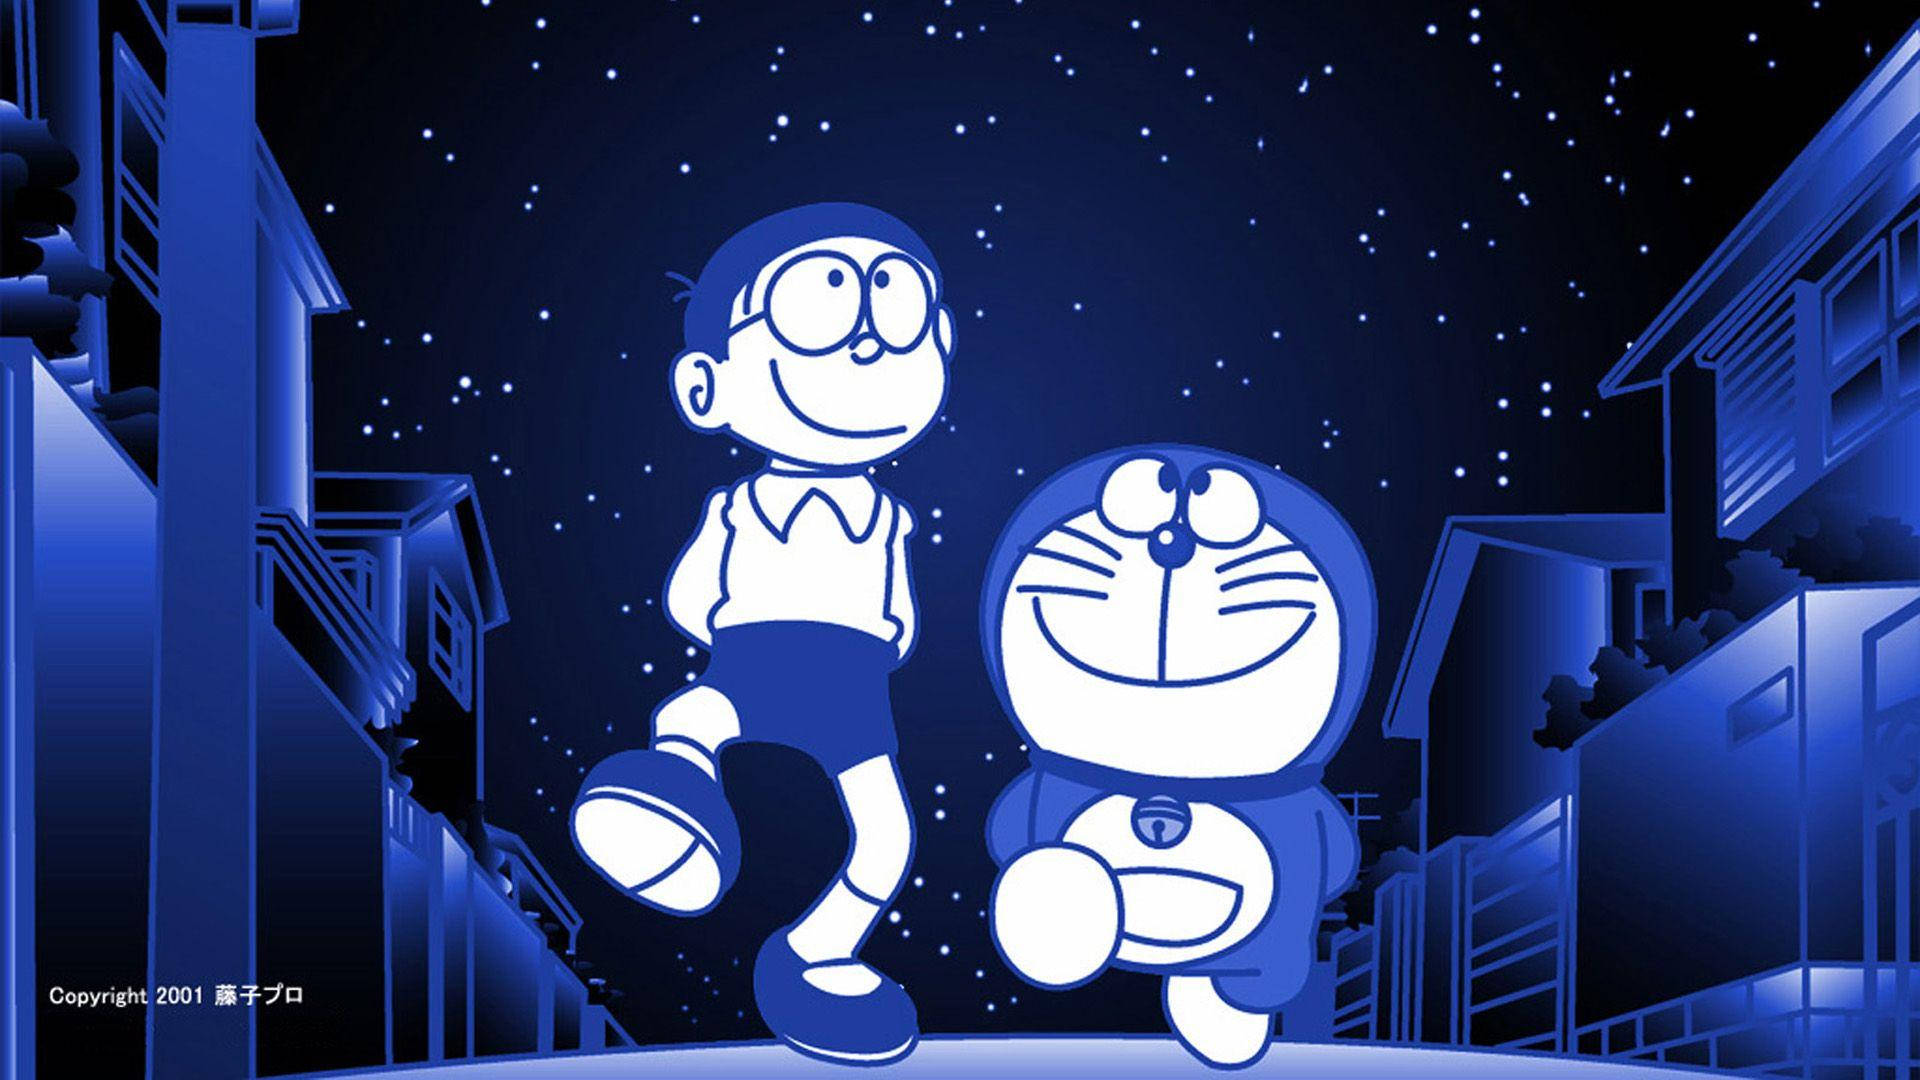 Doraemon And Nobita In Blue